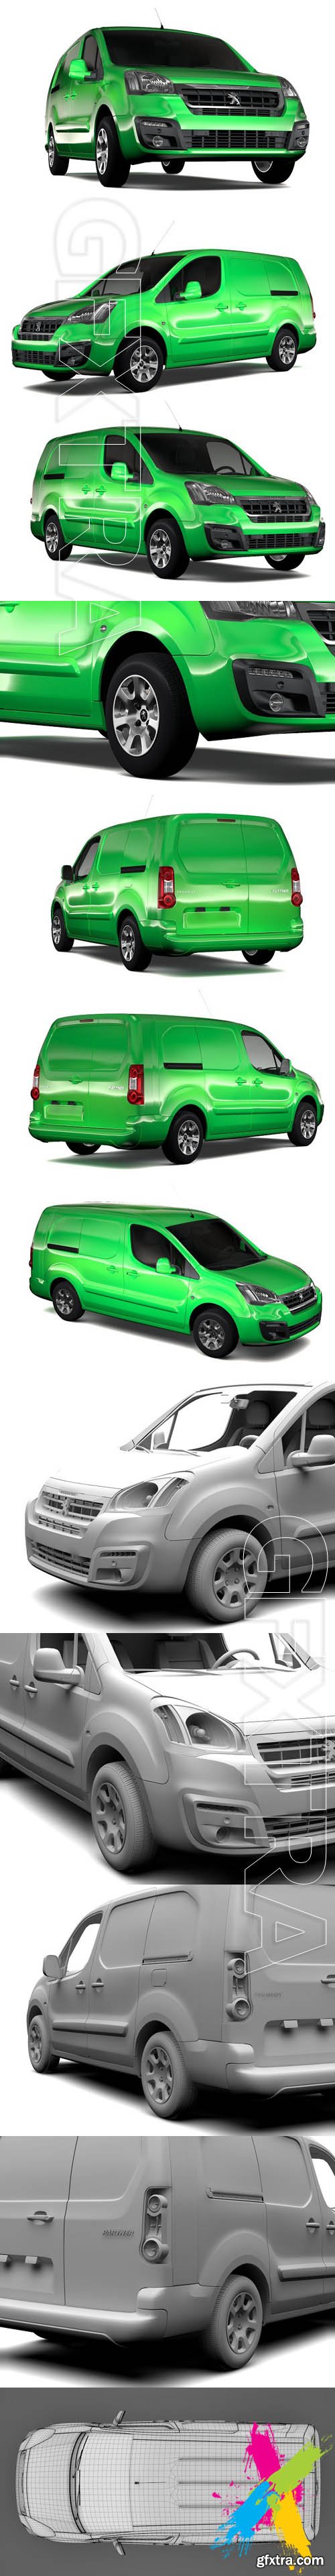 CreativeMarket - Peugeot Partner Van L2 2slidedoors 1844408